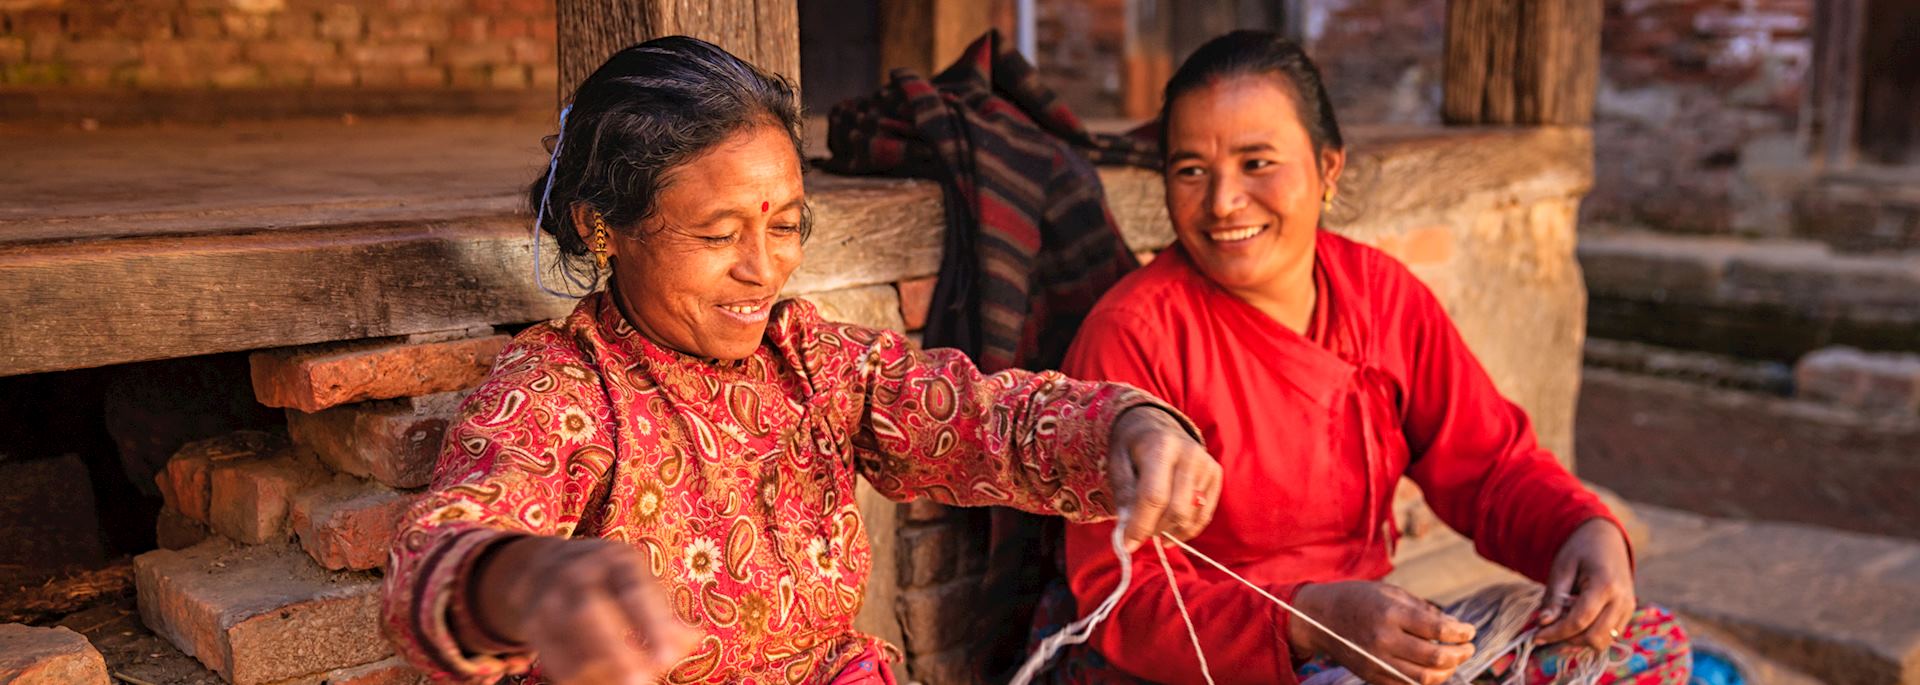 Nepalese women spinning wool, Bhaktapur